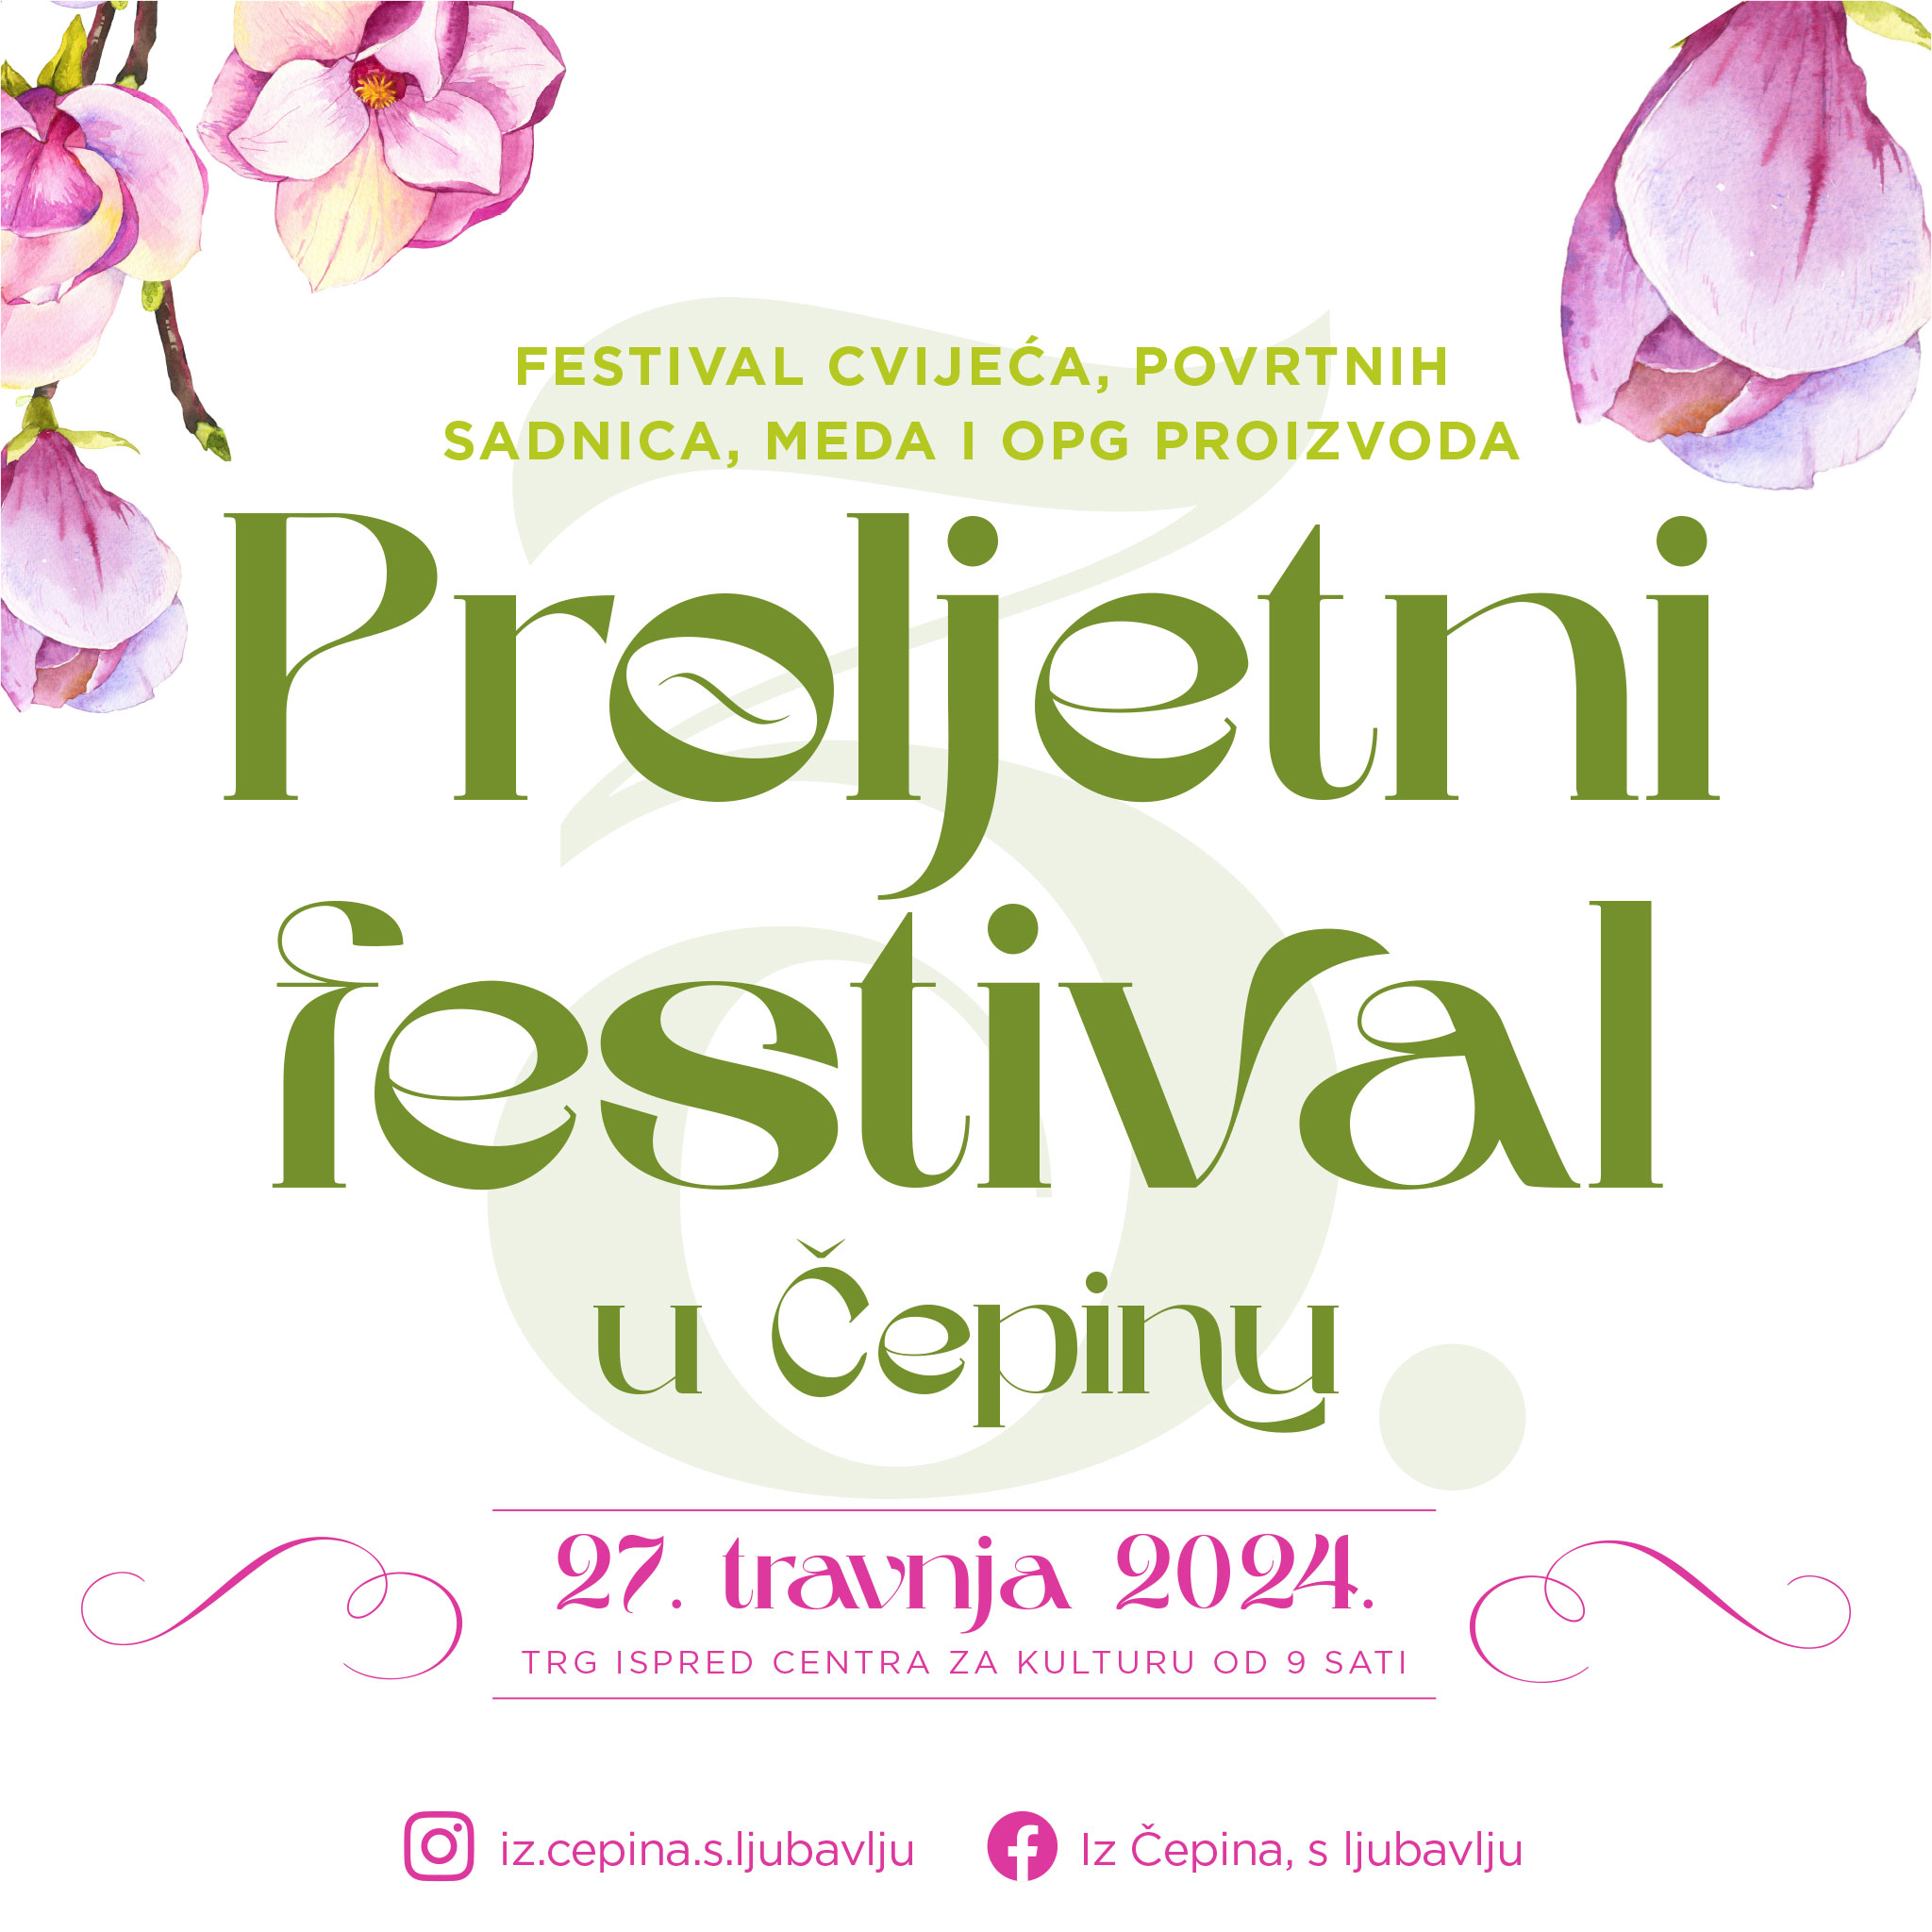 Proljetni festival u Čepinu